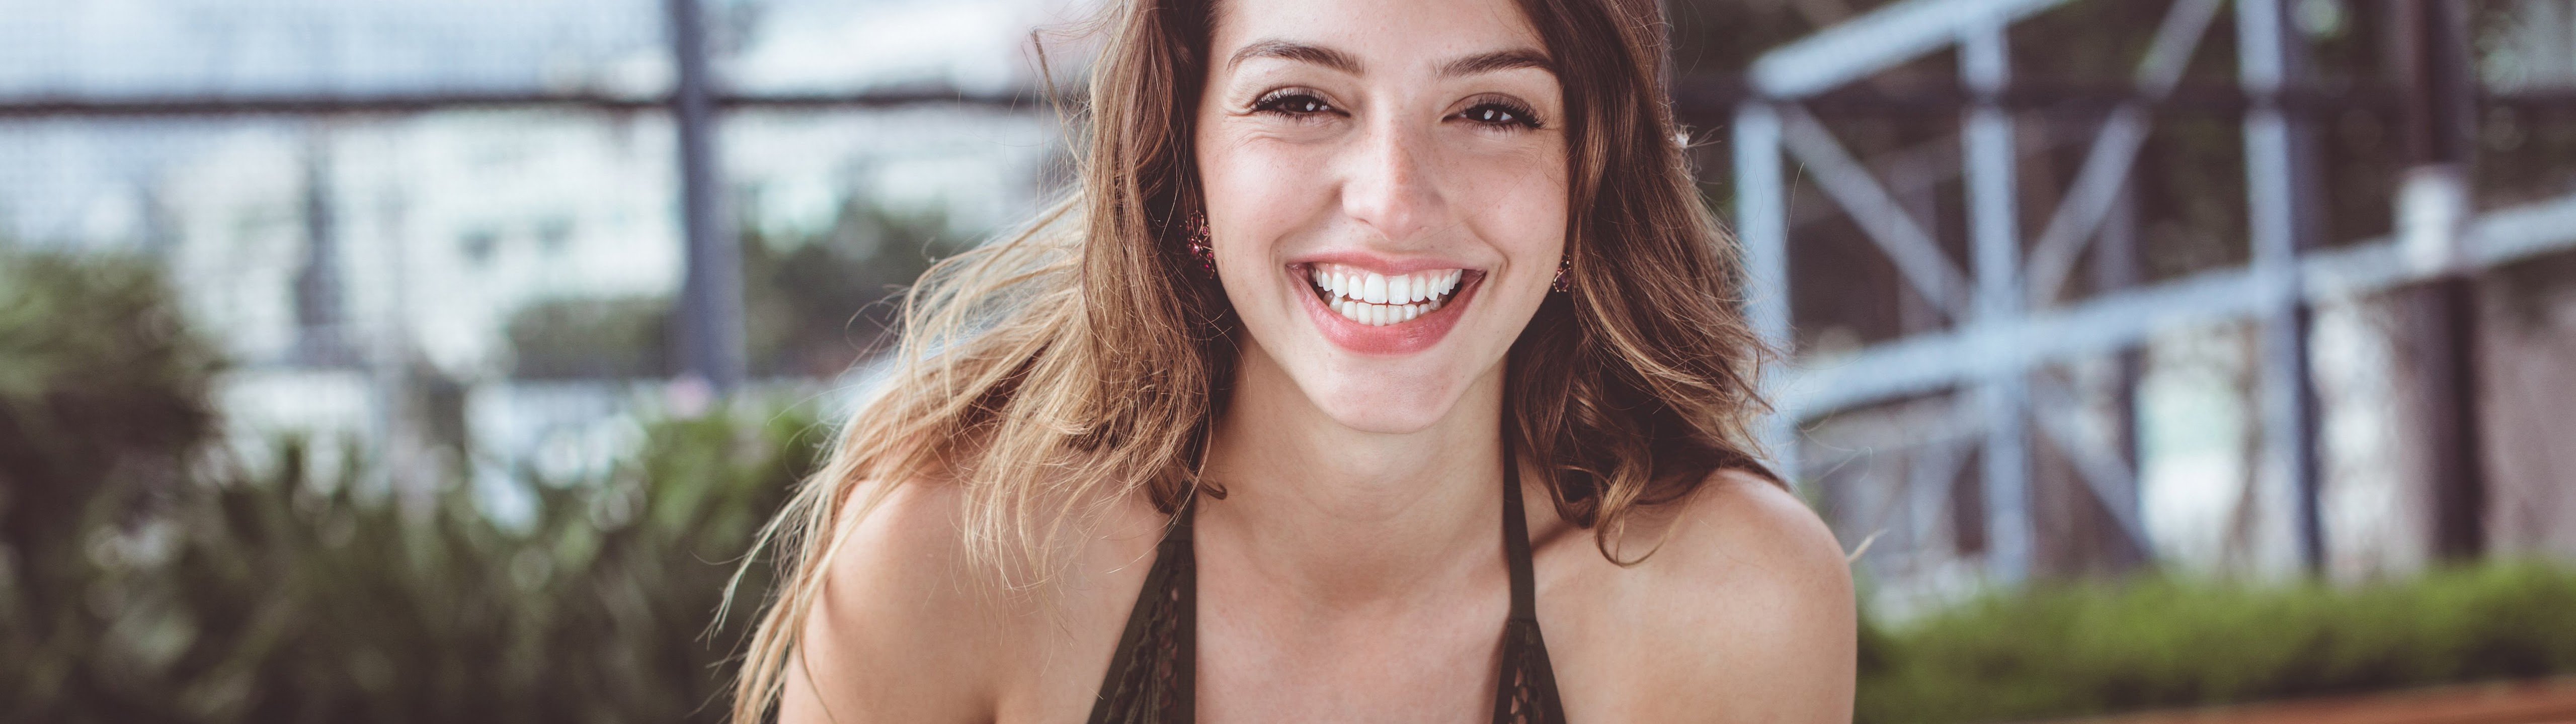 Celine Farach Beautiful Women Smile Model 8K Wallpaper